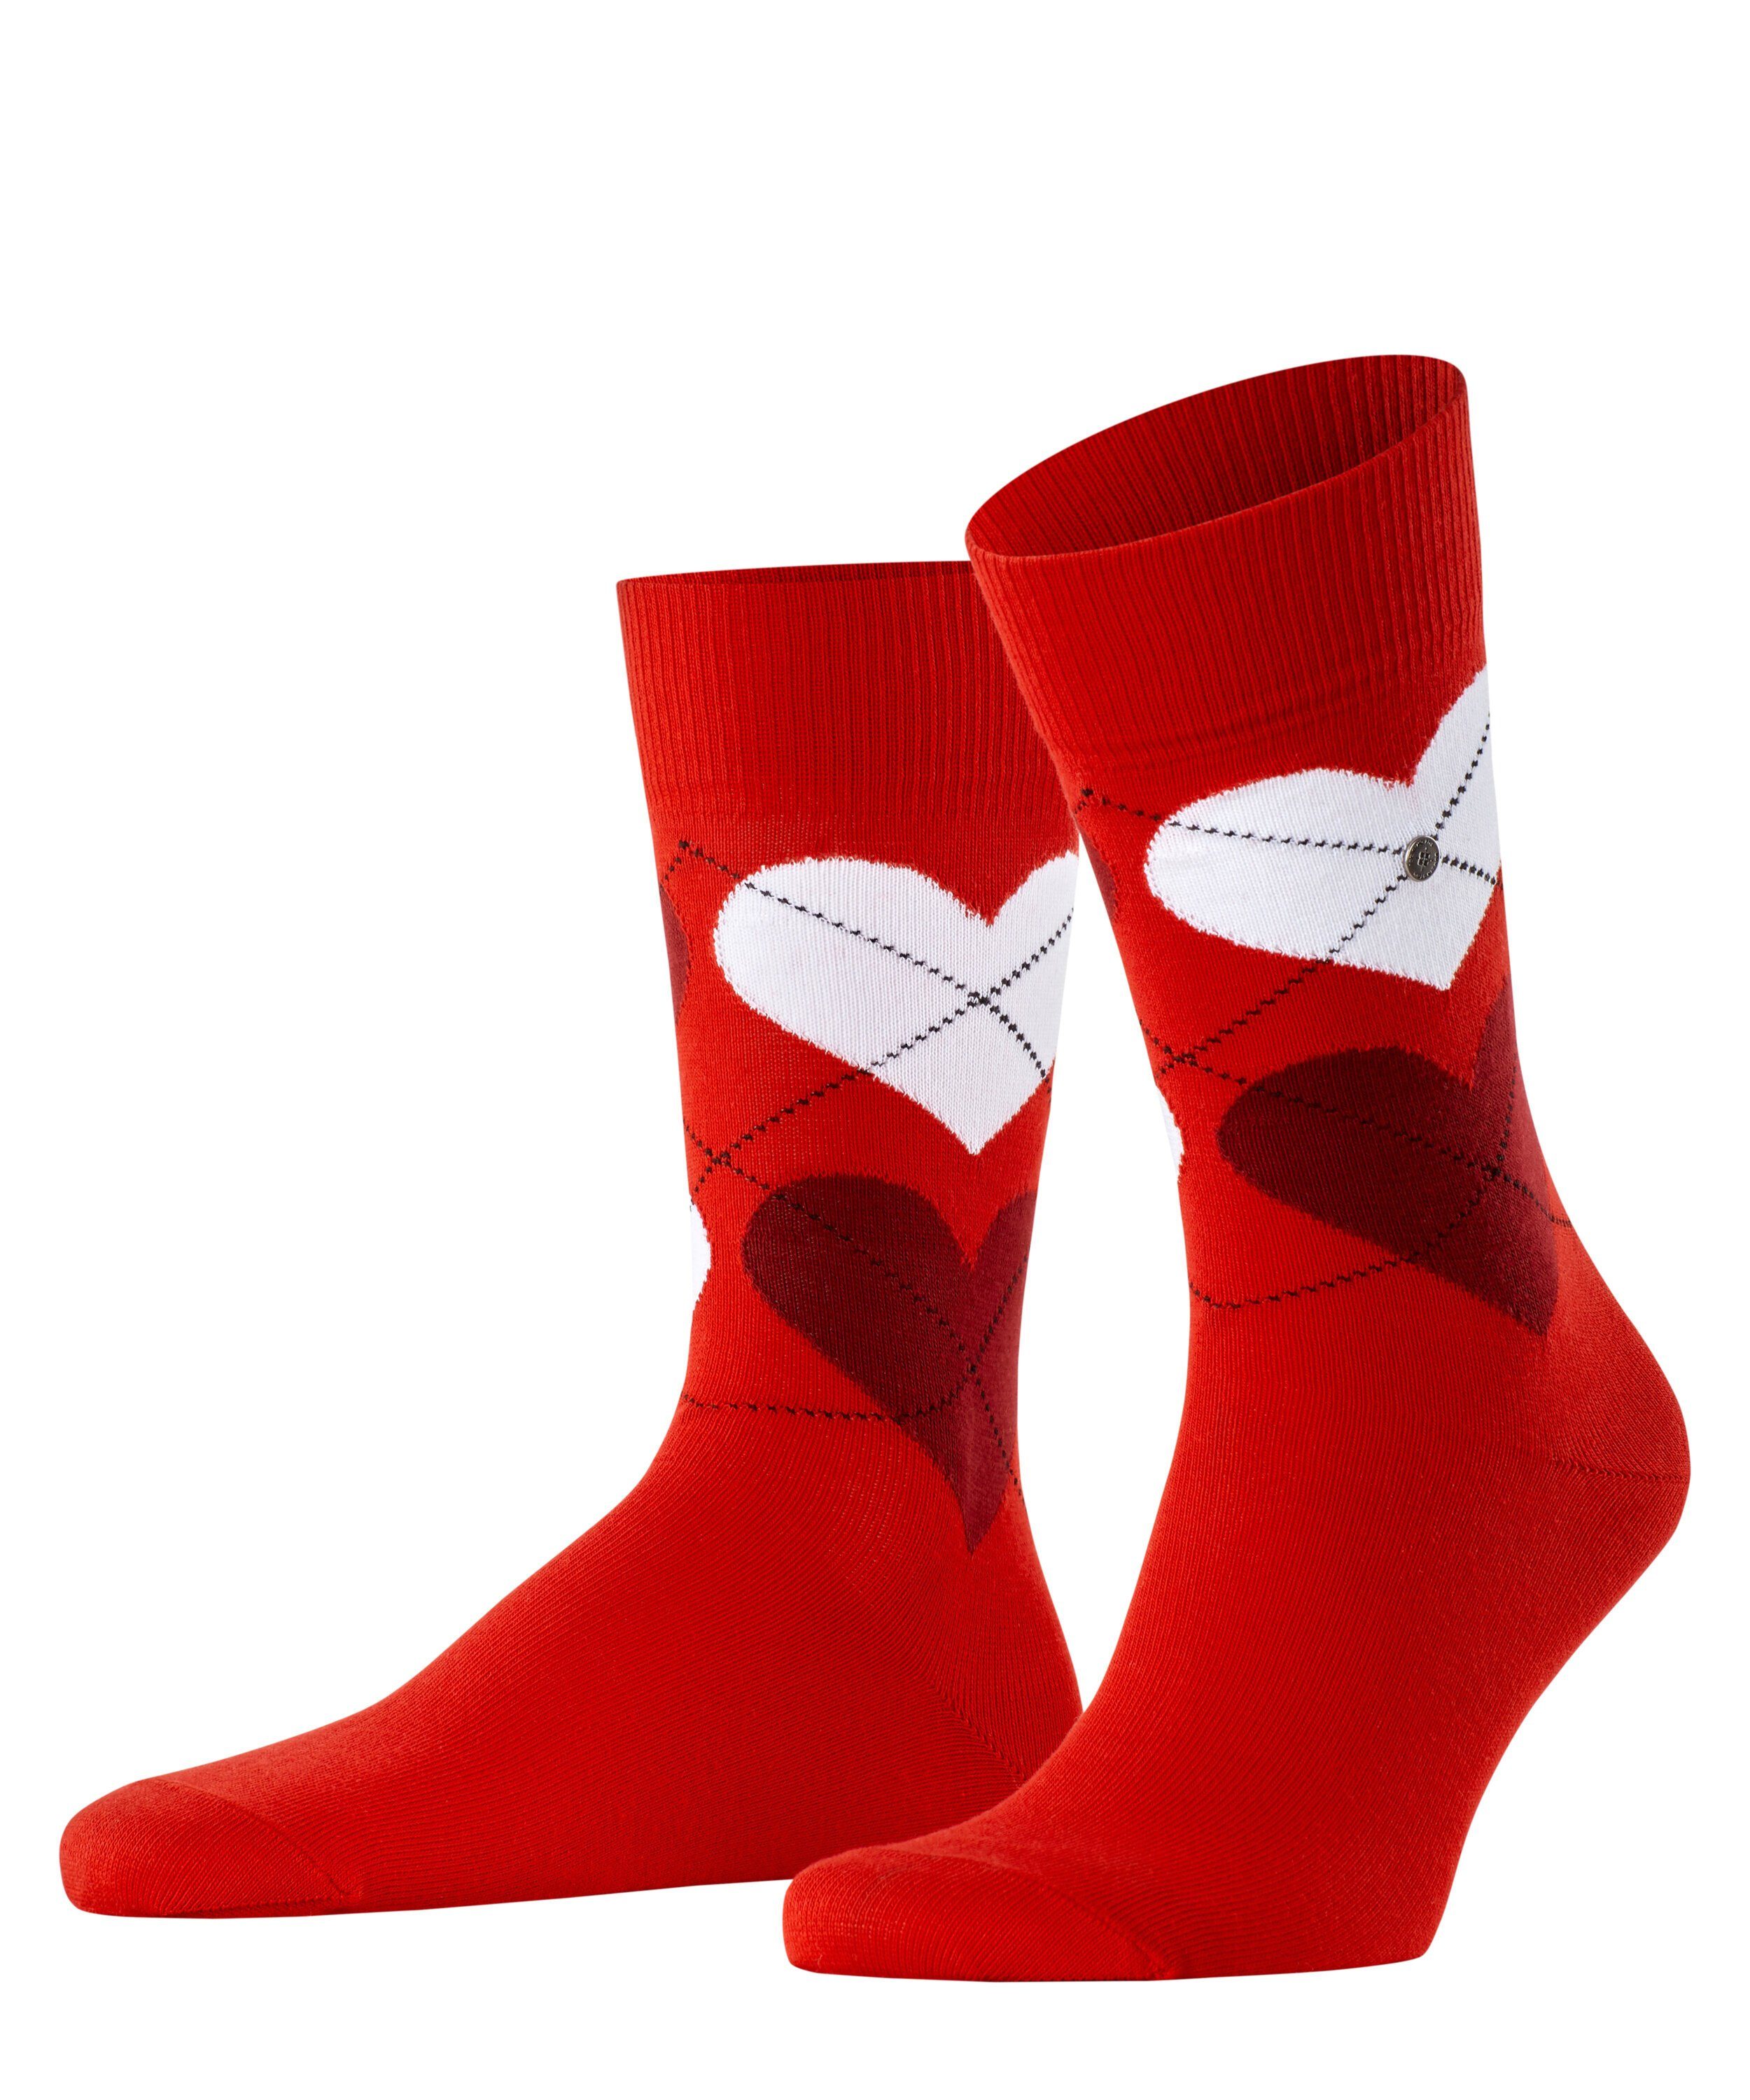 Wäsche/Bademode Socken Burlington Socken Soulmate (1-Paar) One size fits all (Gr. 40-46)